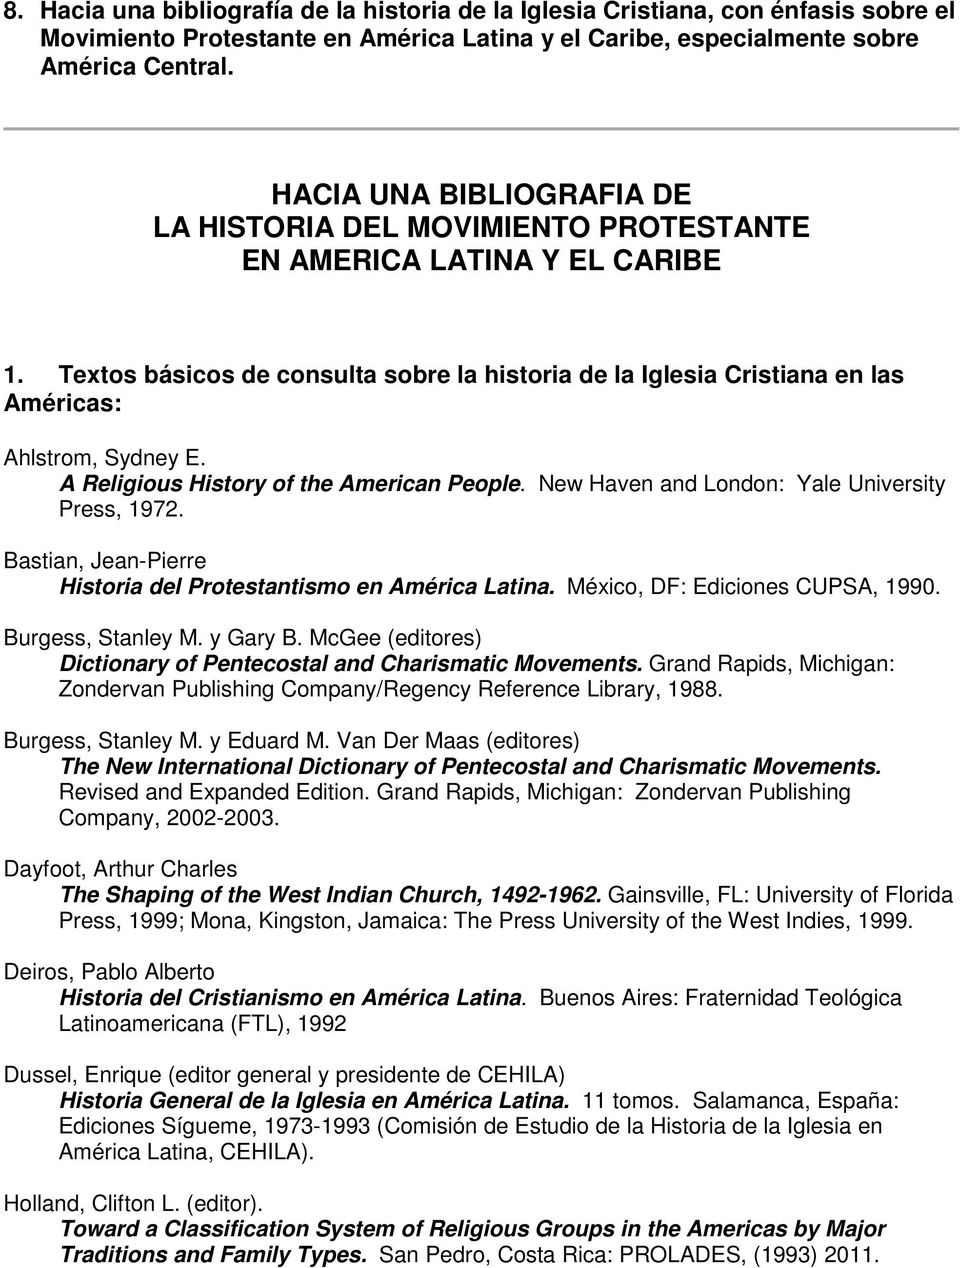 LA HISTORIA DEL PROTESTANTISMO EN AMERICA CENTRAL, - PDF Descargar libre